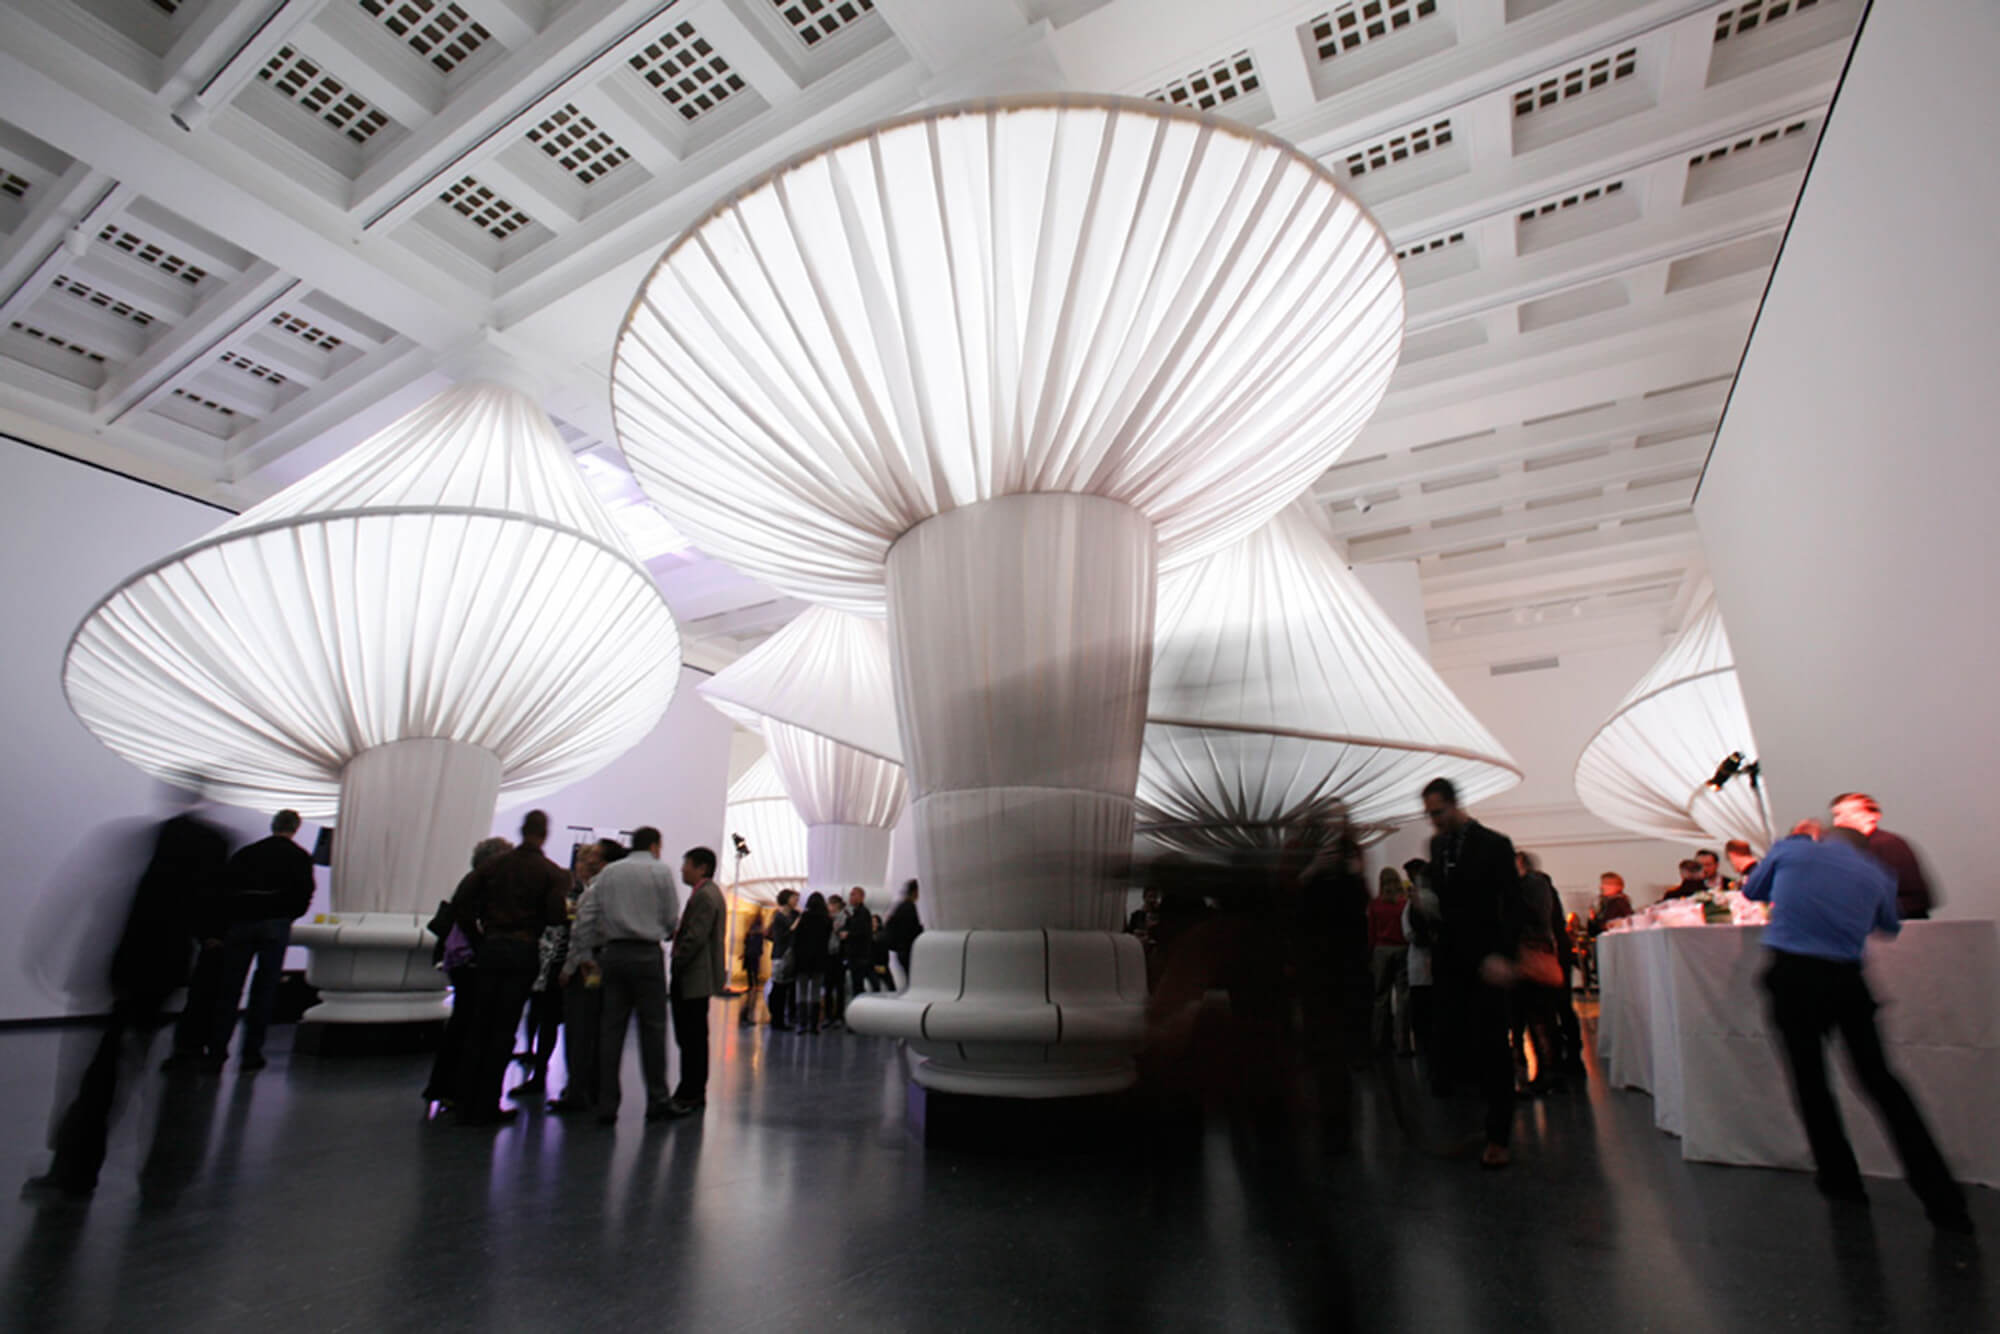 Situスタジオによる、Sunbrellaファブリックを用いたブルックリン美術館におけるアート展示